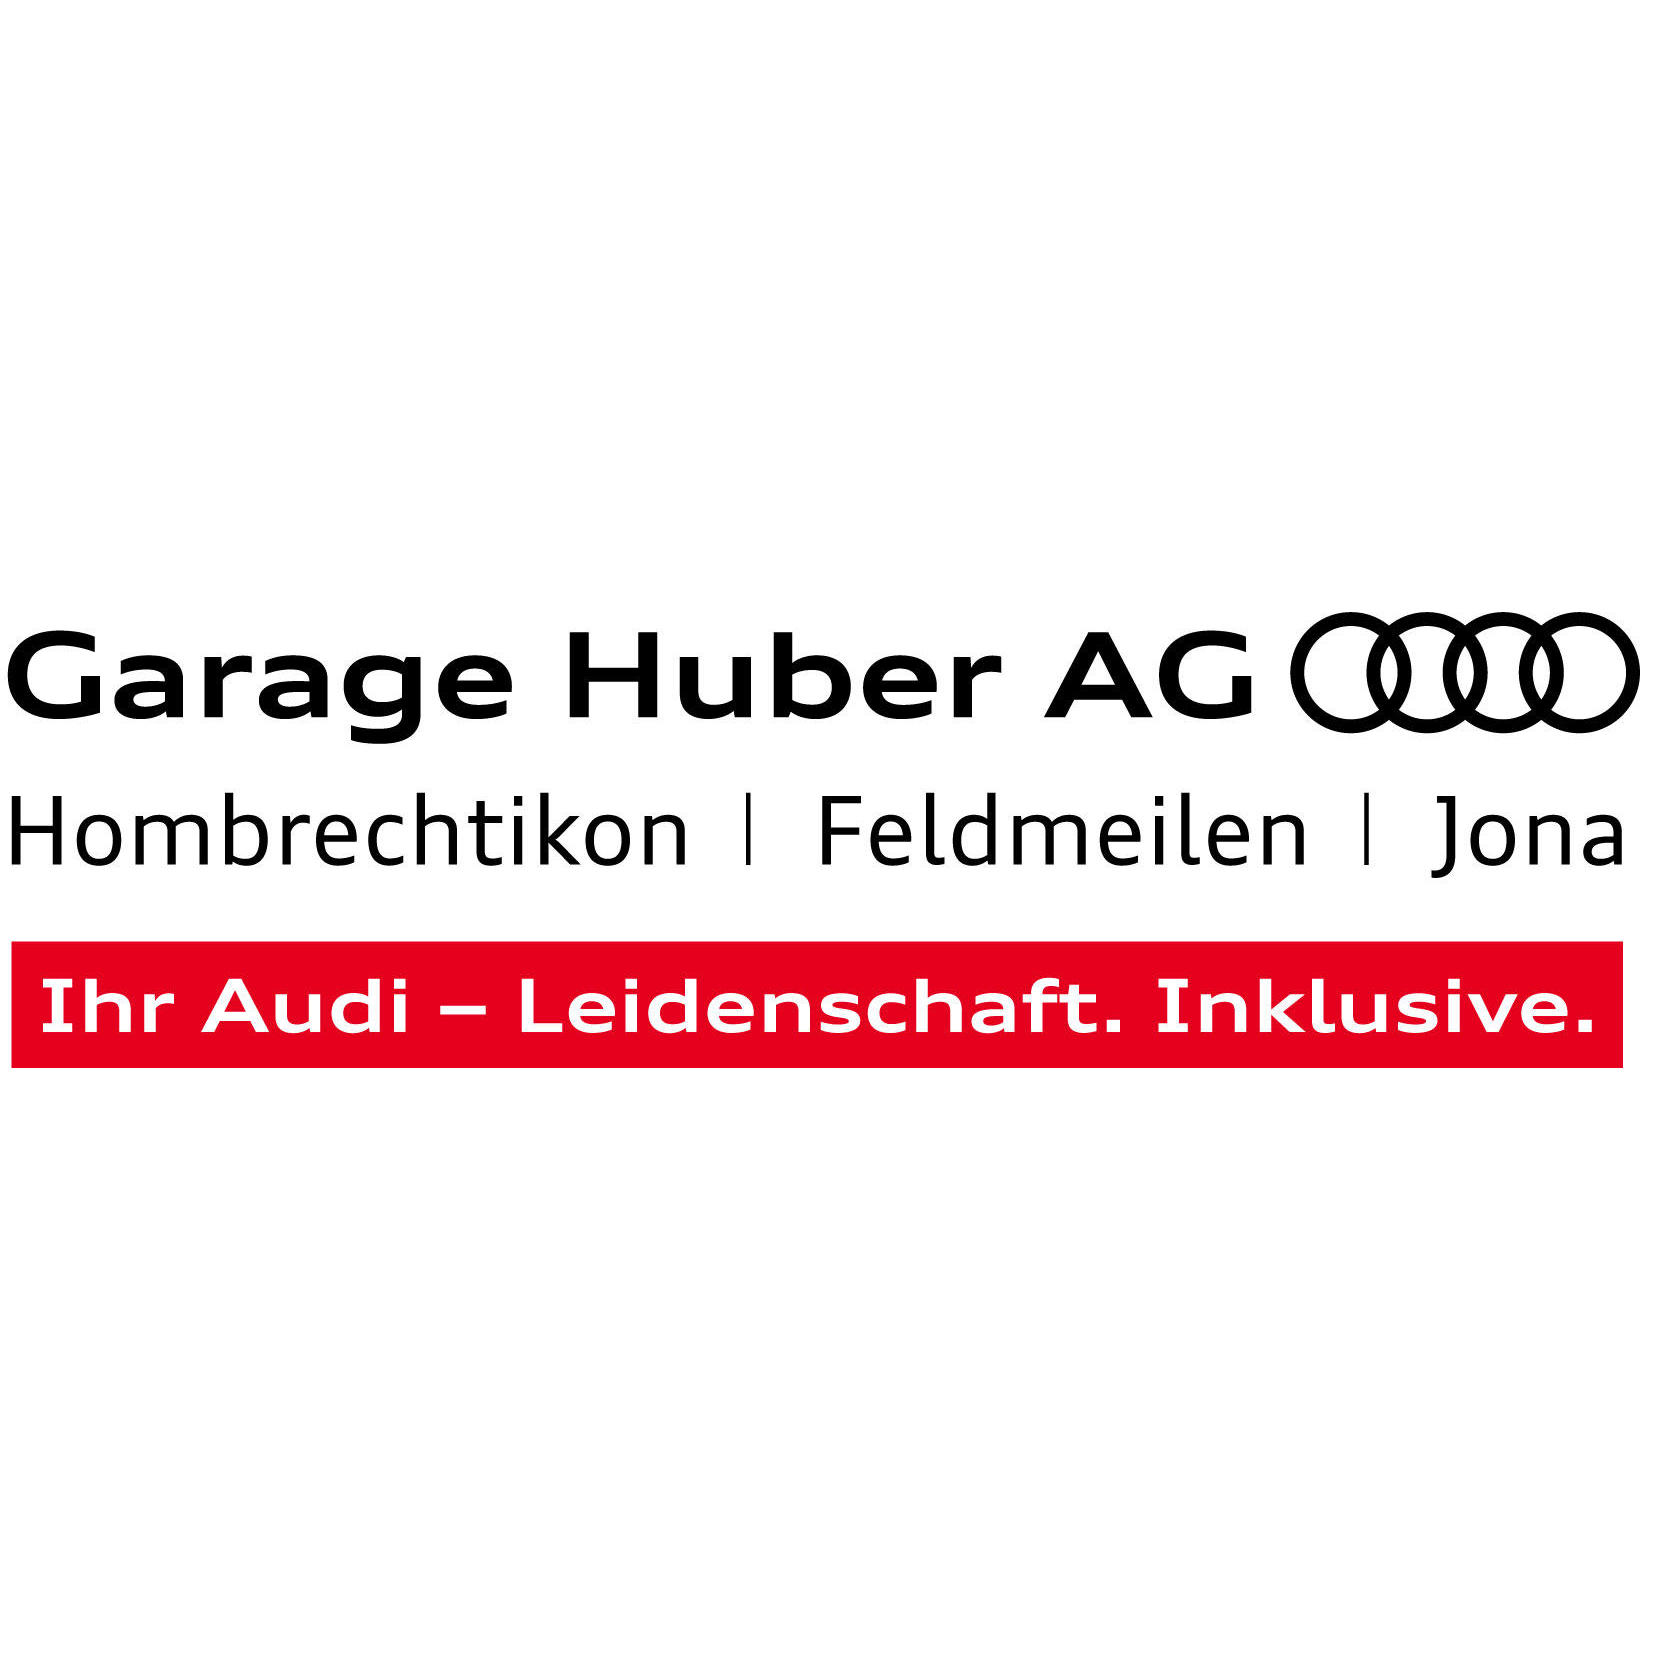 Garage Huber AG Jona Logo